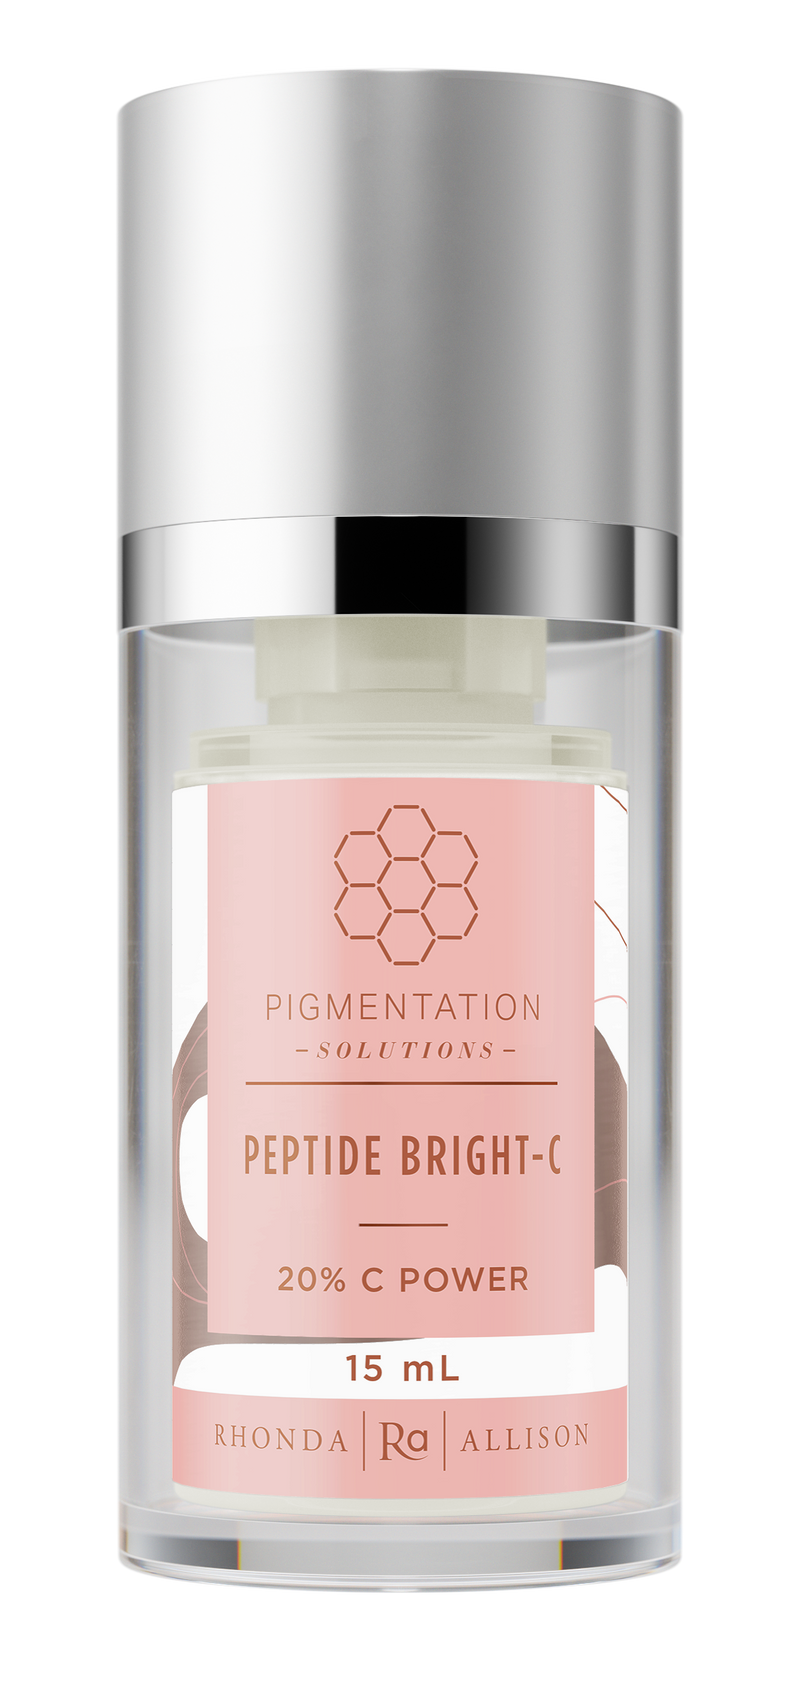 Peptide Bright-C